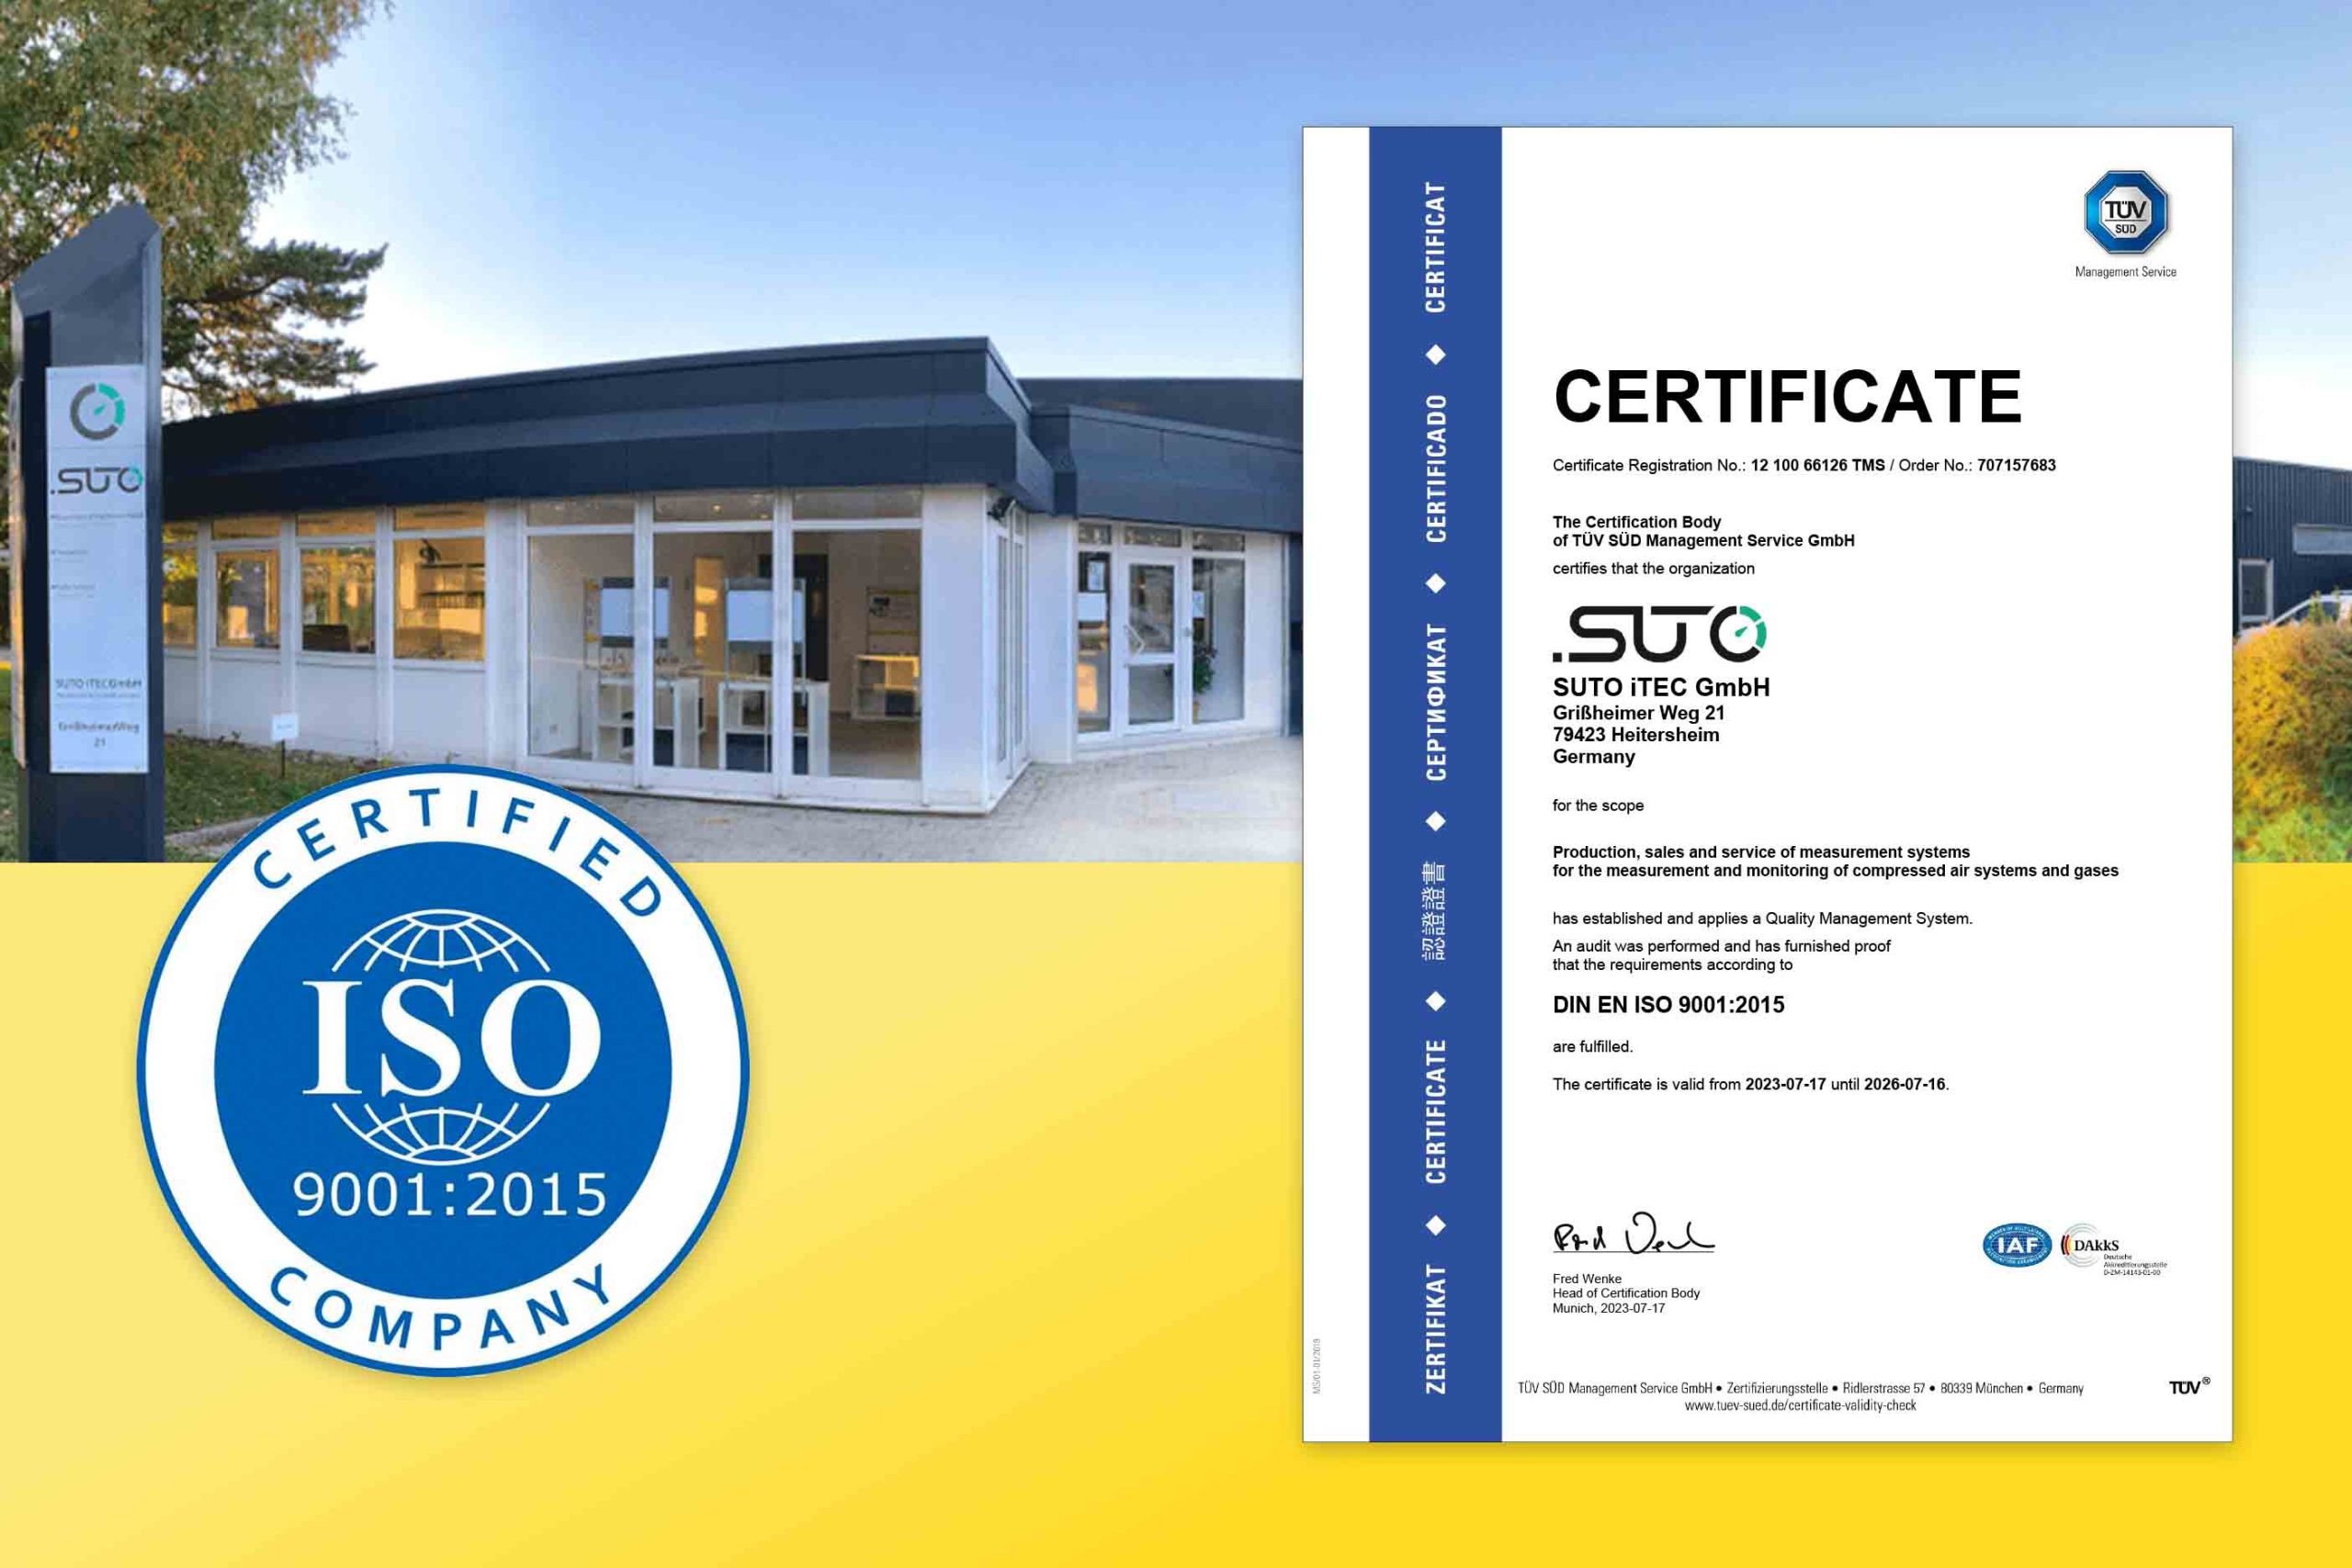 Le siège de SUTO iTEC en Allemagne obtient la certification ISO 9001:2015